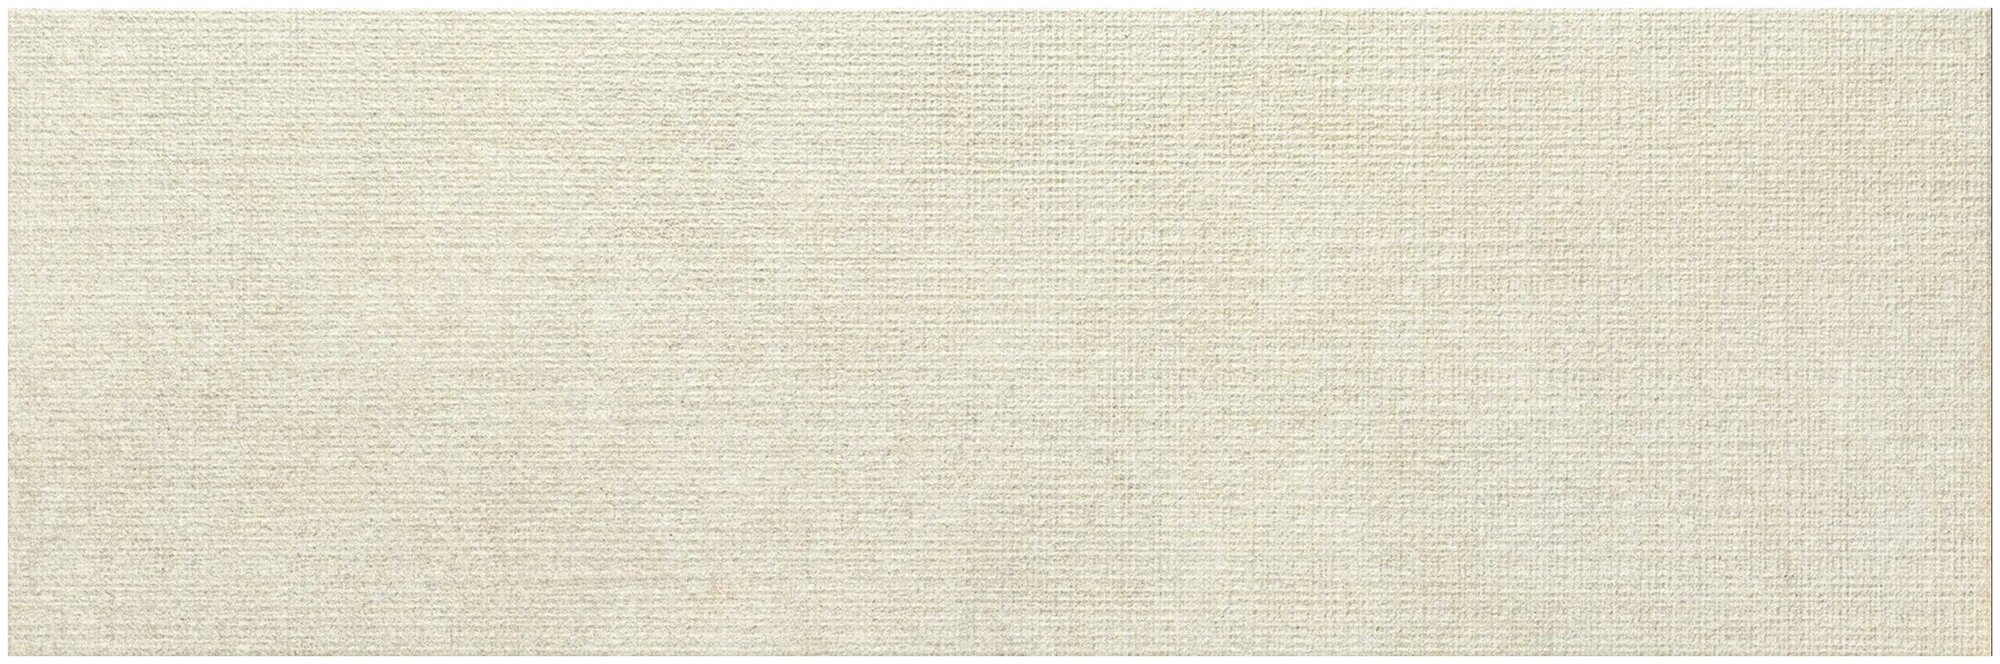 Керамическая плитка, настенная Emigres Atlas beige 25x75 см (1,5 м²)